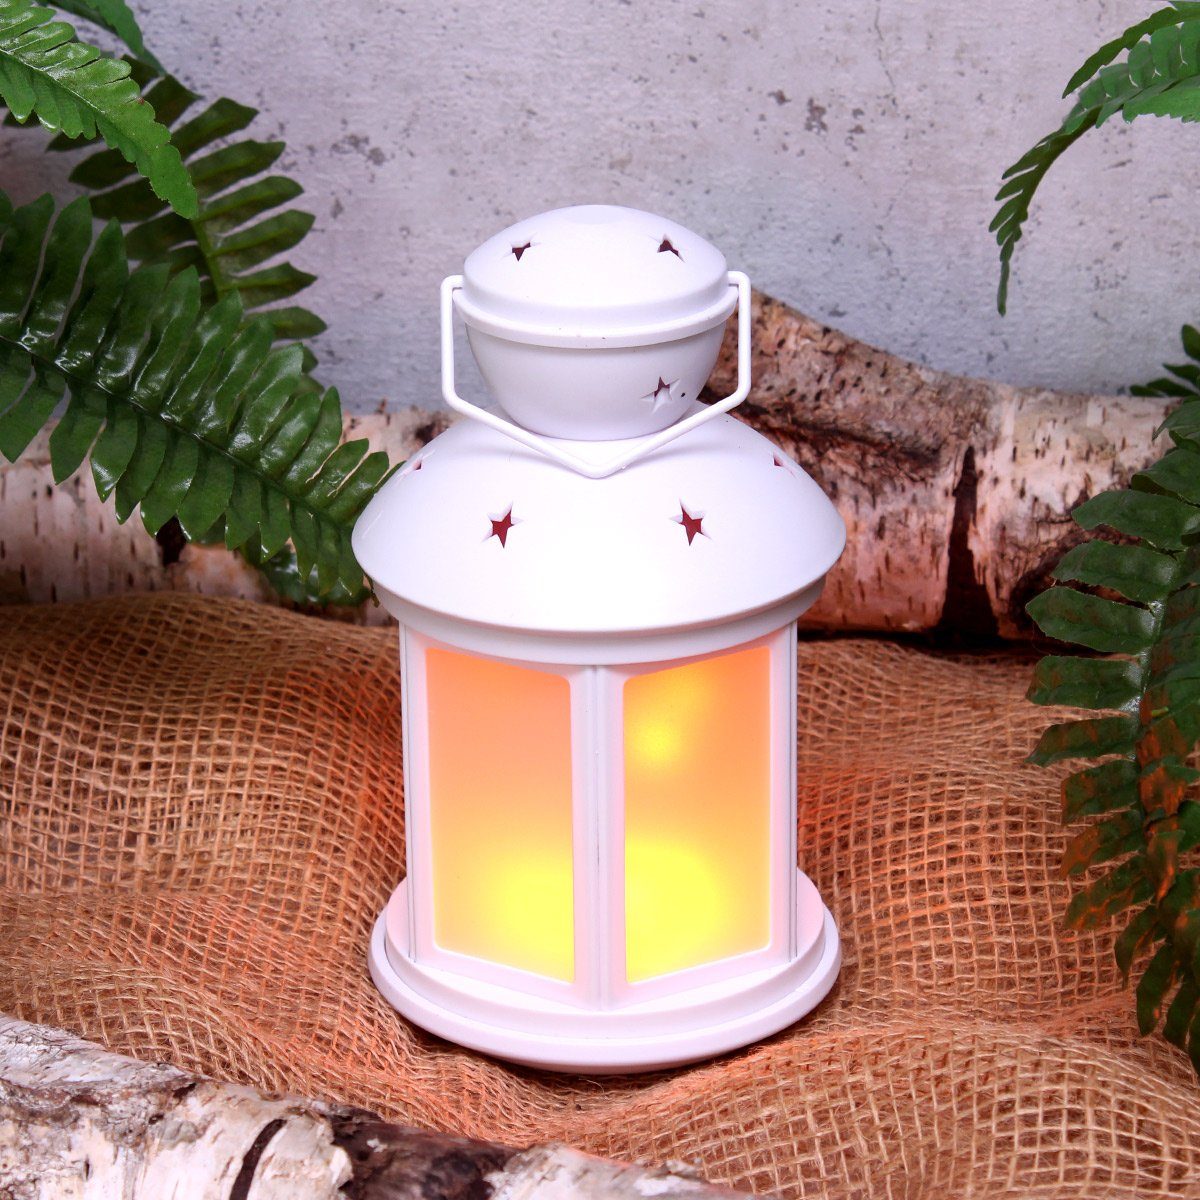 MARELIDA LED Laterne LED Flammeneffekt LED Dekolaterne Laterne mit amber Classic, flackernd 22cm weiß